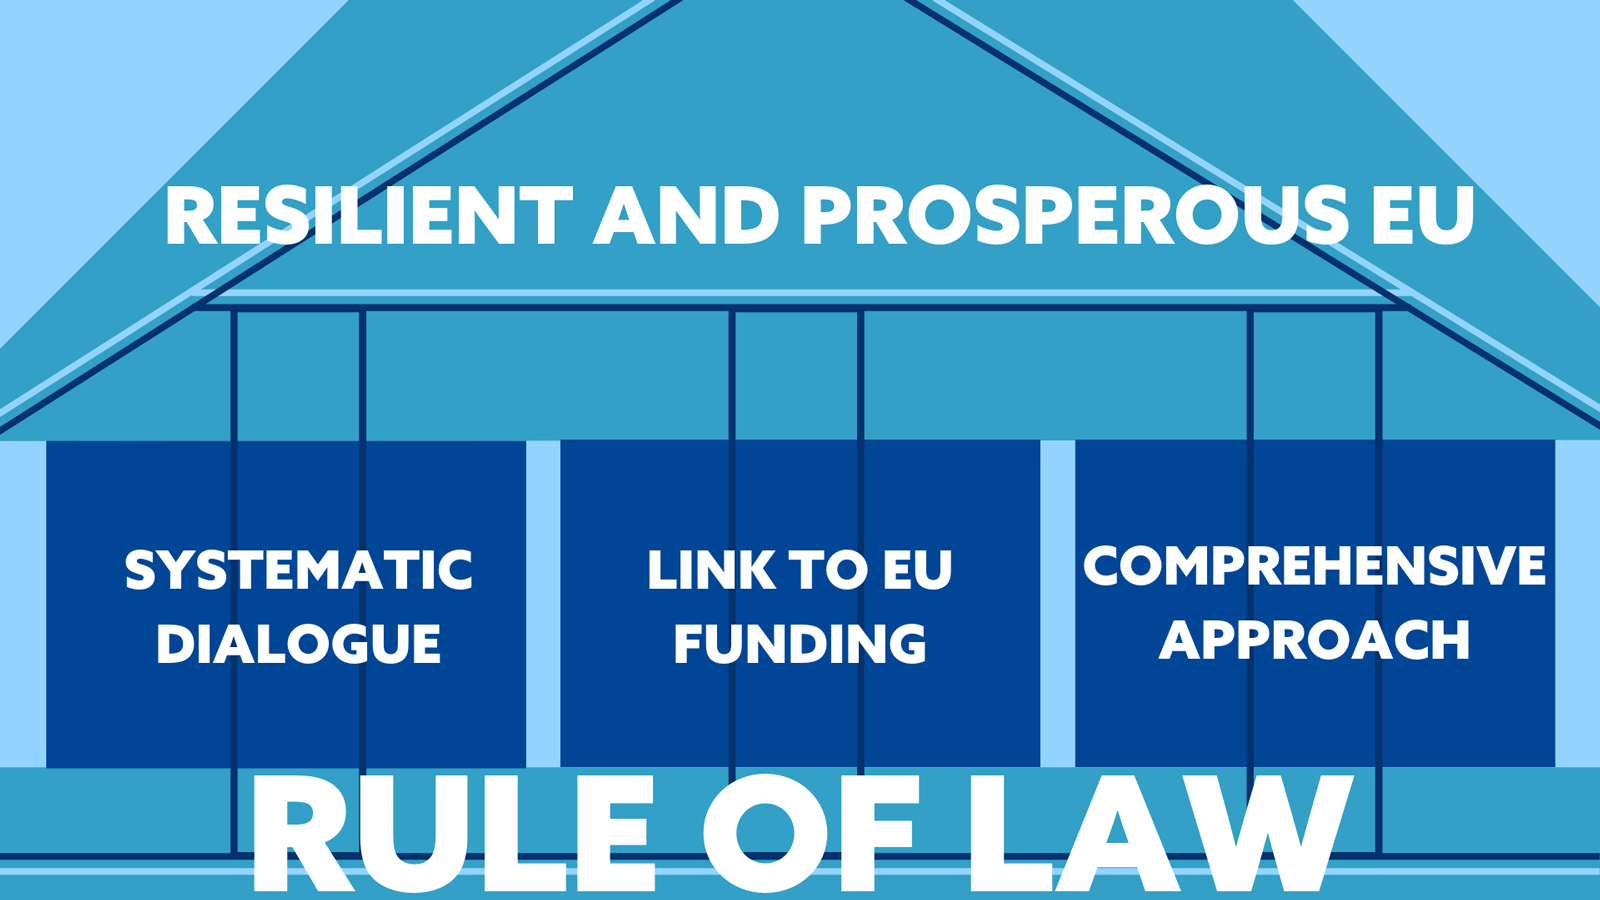 Die Grafik veranschaulicht das Prinzip der Rechtsstaatlichkeit als Grundlage für eine sichere und florierende EU. Der systematische Dialog, die Verknüpfung mit dem EU-Haushalt und Zusammenarbeit stärken dieses Prinzip.